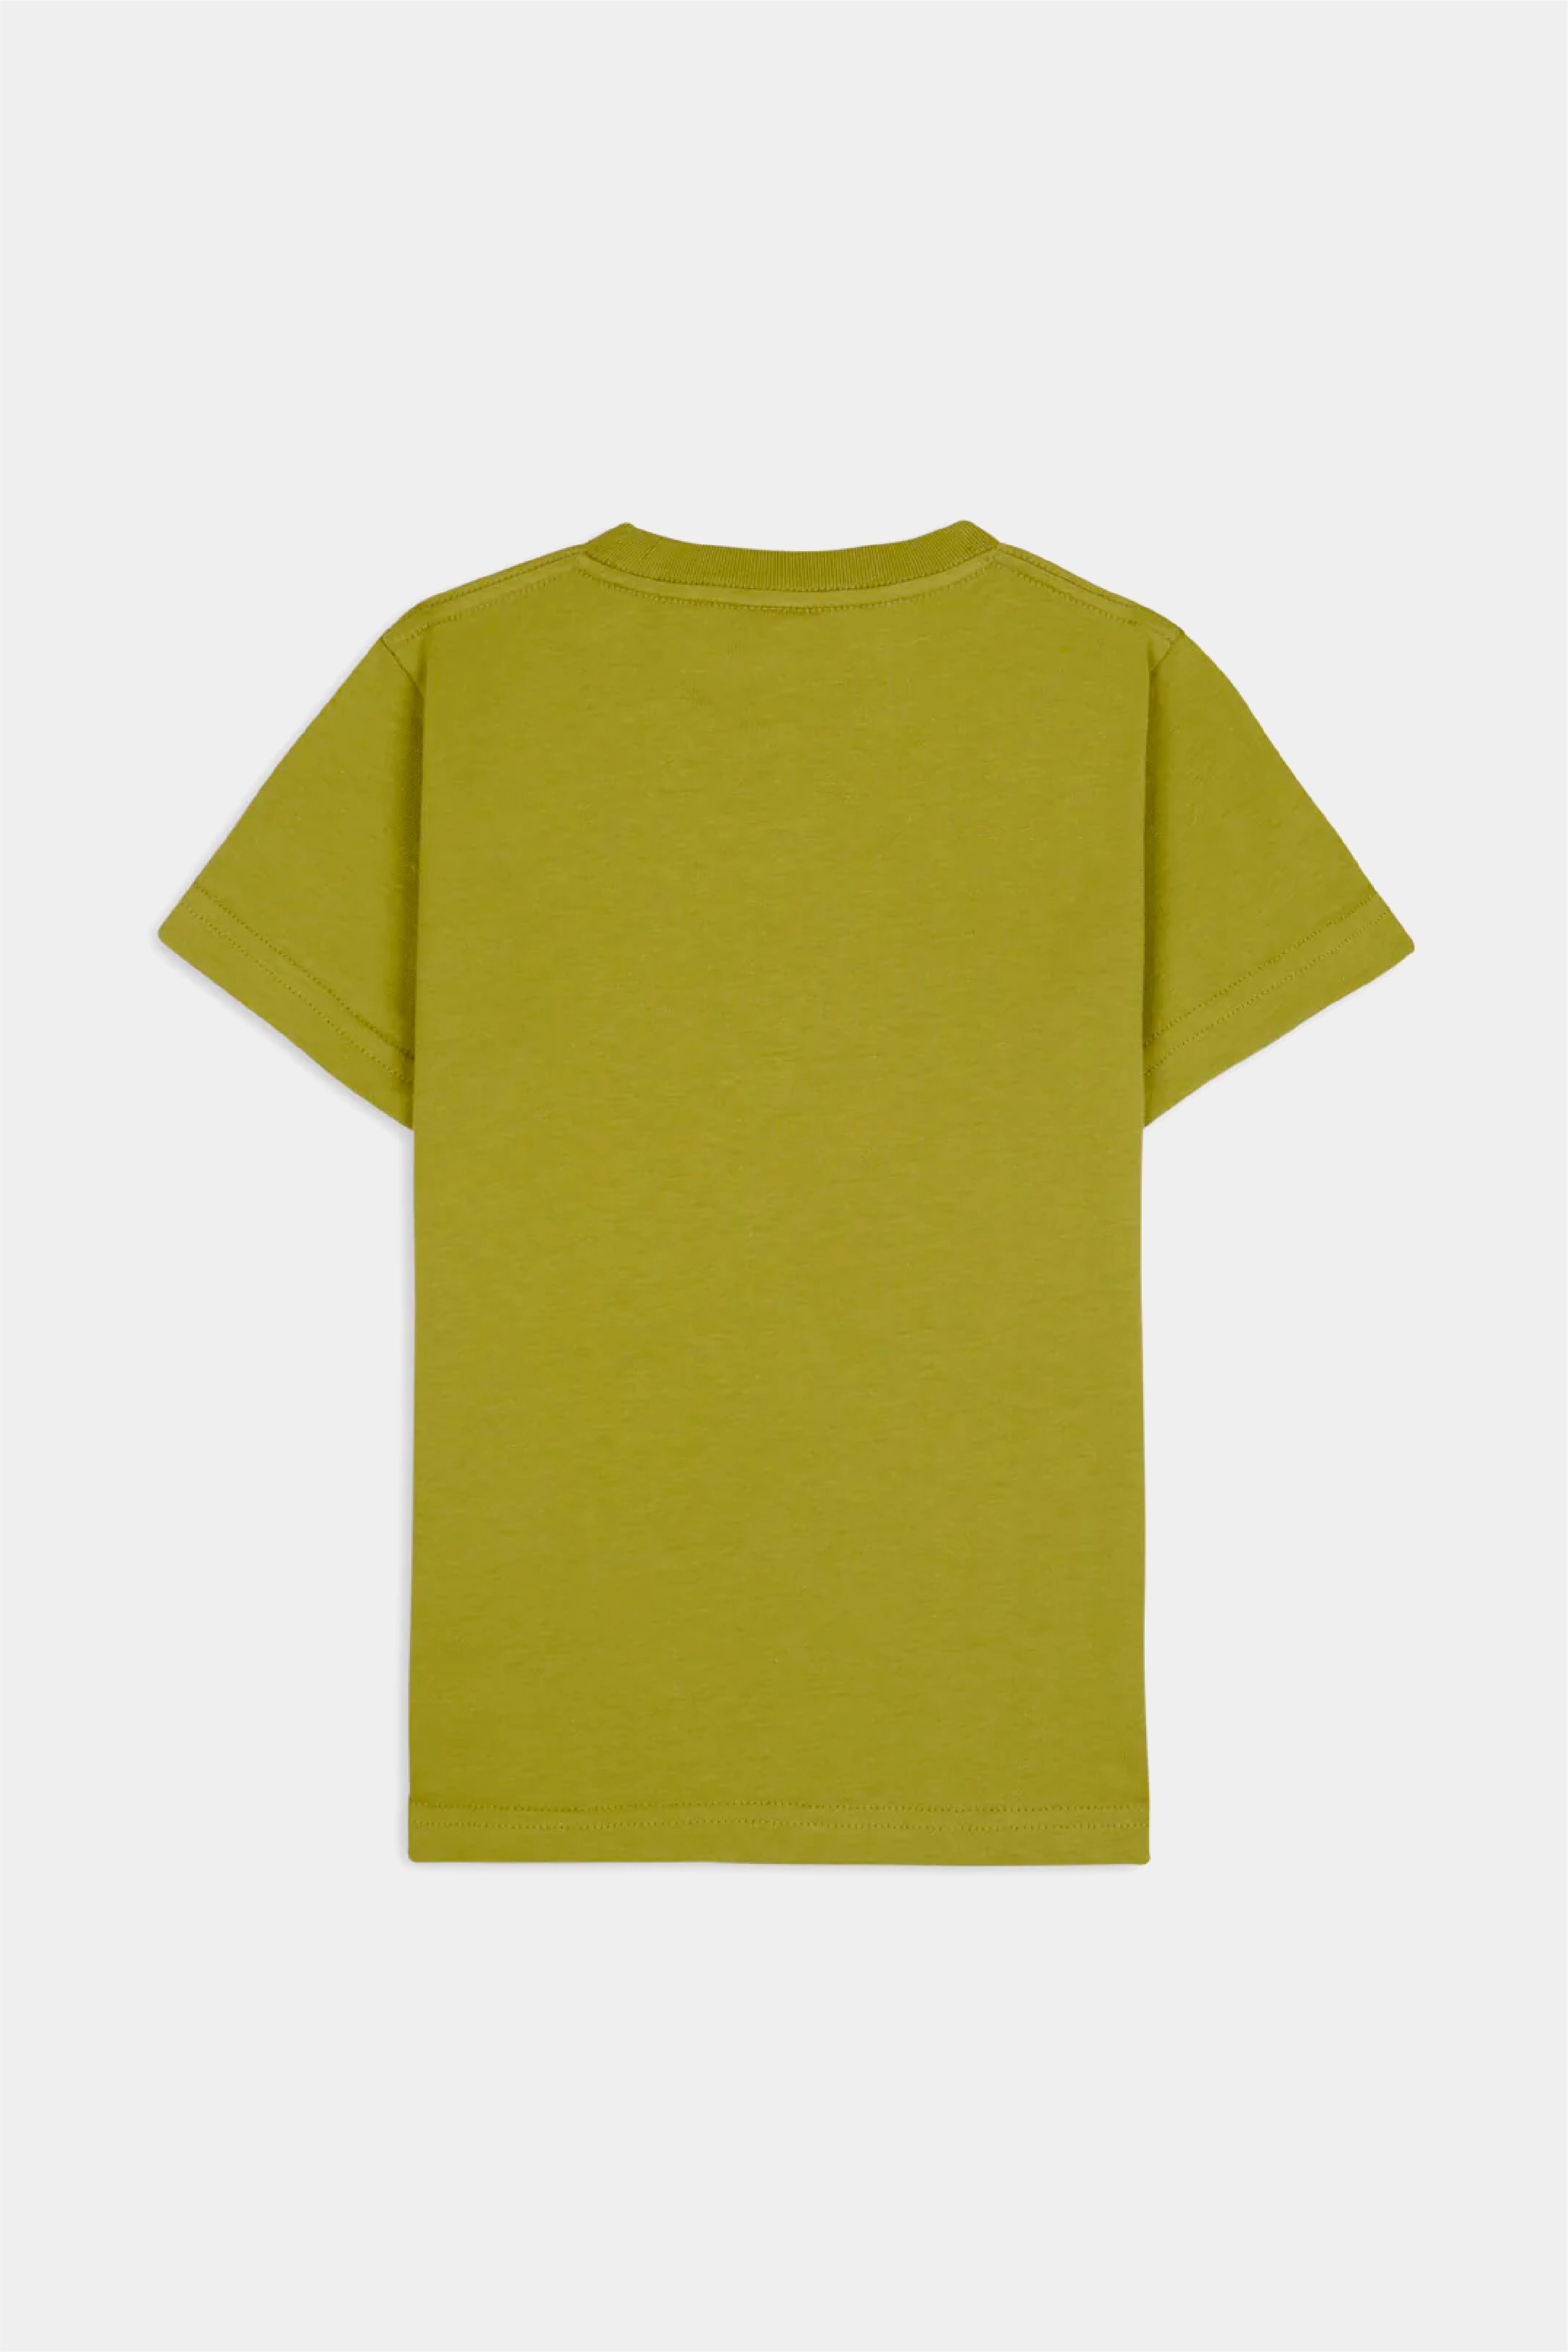 Selectshop FRAME - BRAIN DEAD Creeper Kids T-Shirt T-Shirts Dubai